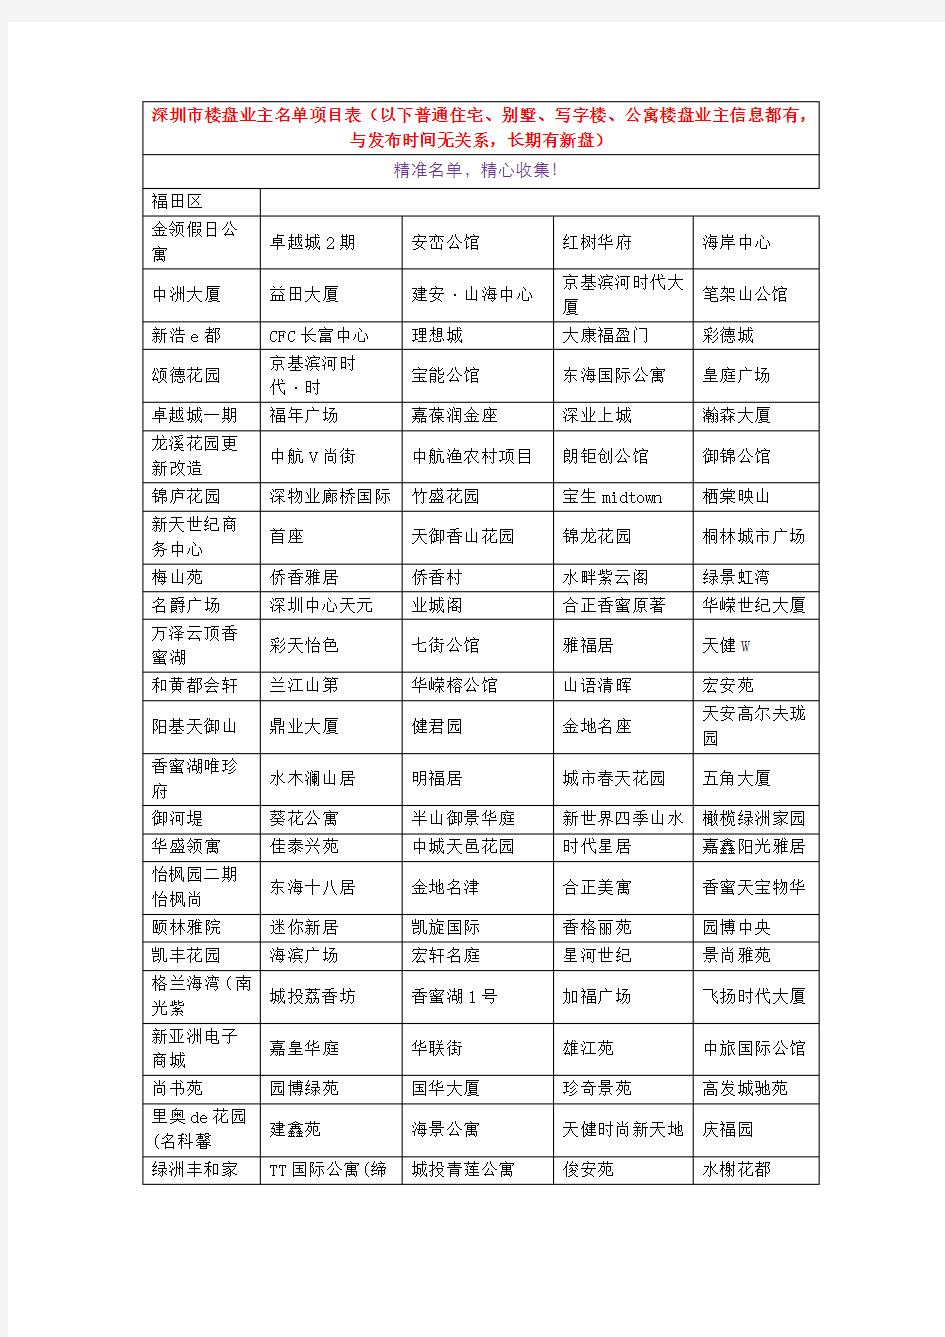 新一轮深圳市最近交房楼盘业主名单项目表